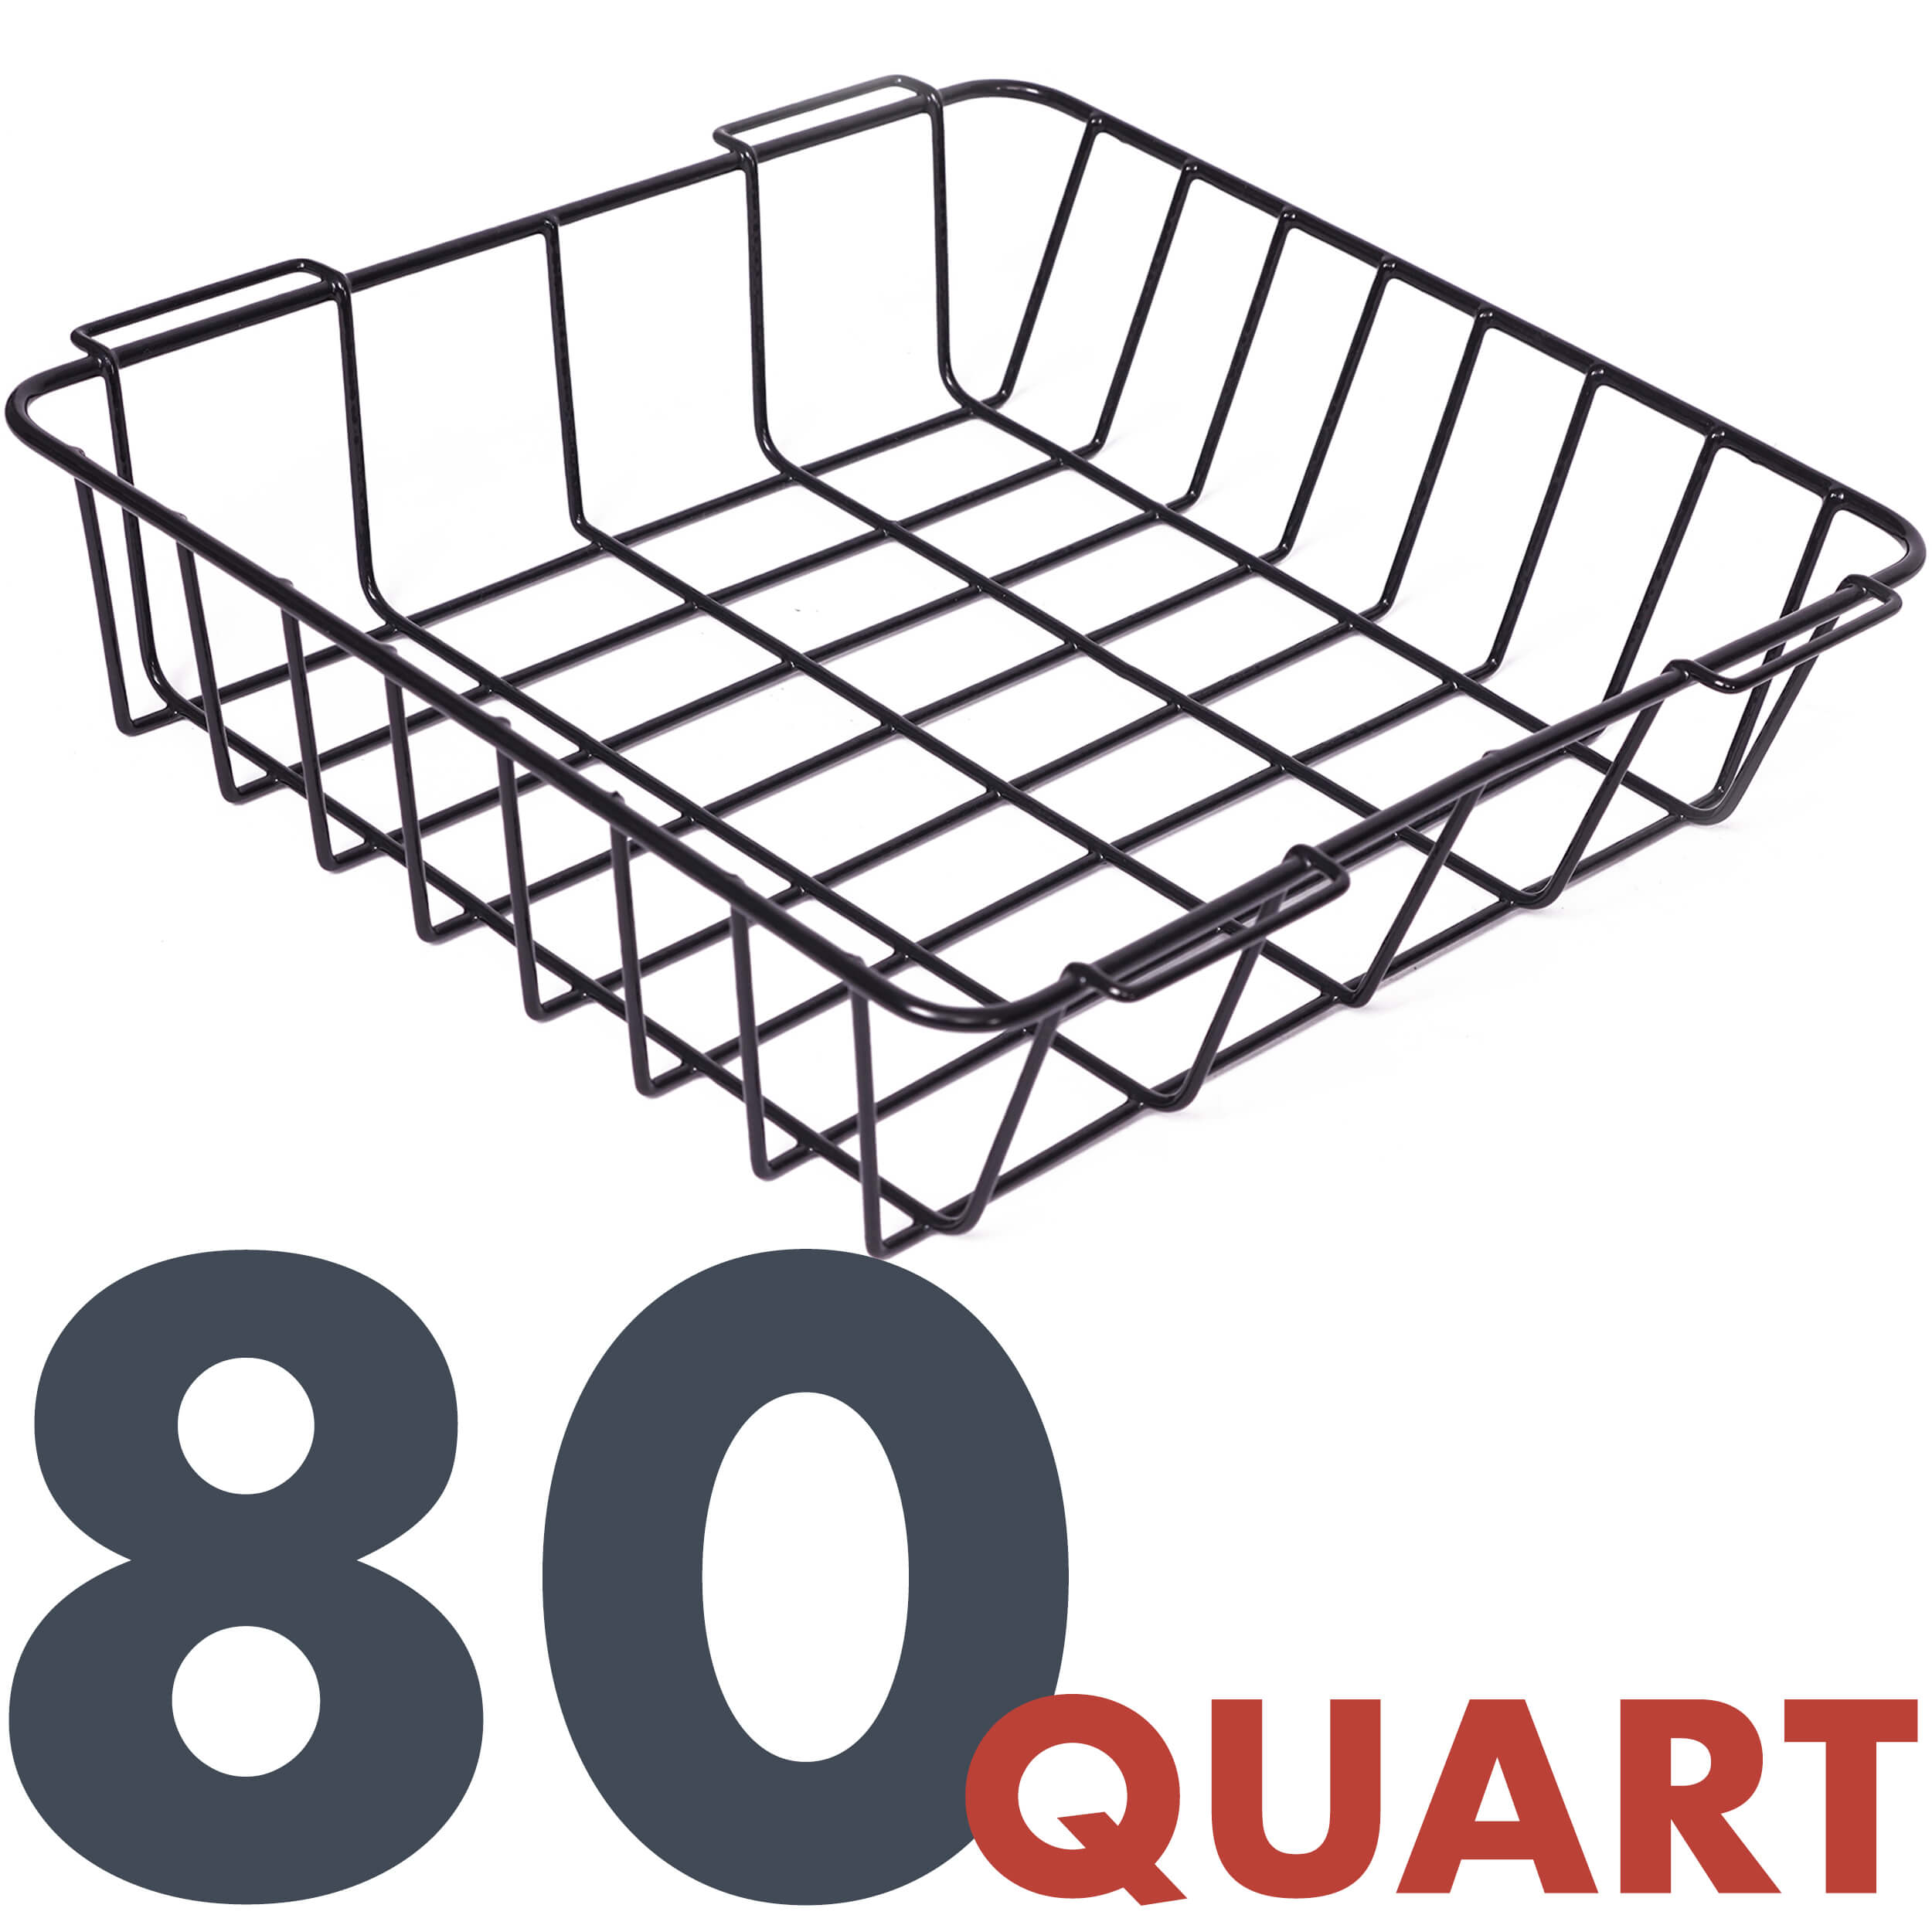 80 Quart Basket, Black, Size Variant